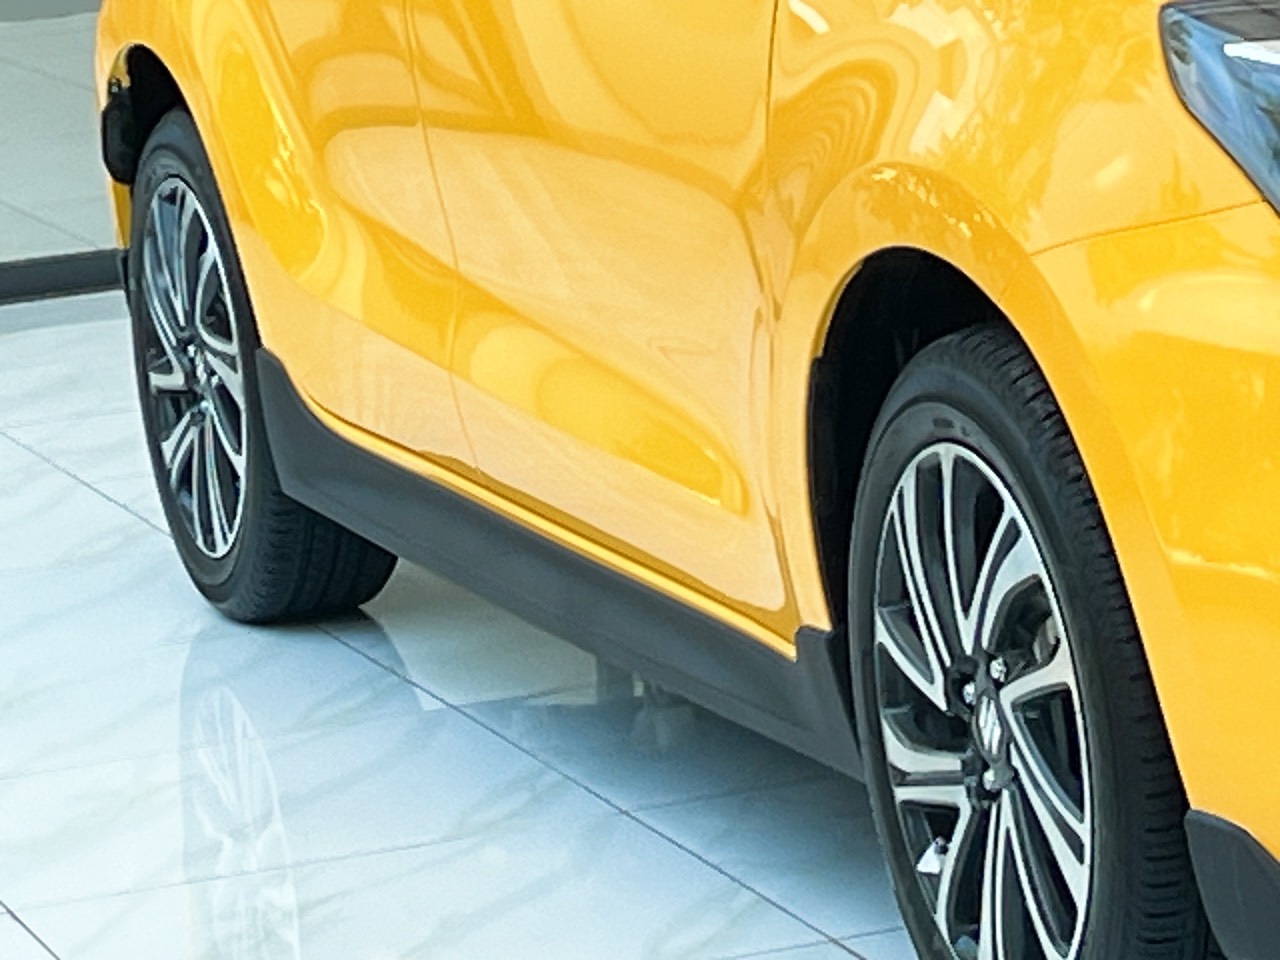 Ốp sườn Swift Lắp đặt ở hai bên hông xe, giúp xe trông rộng rãi và bề thế hơn.